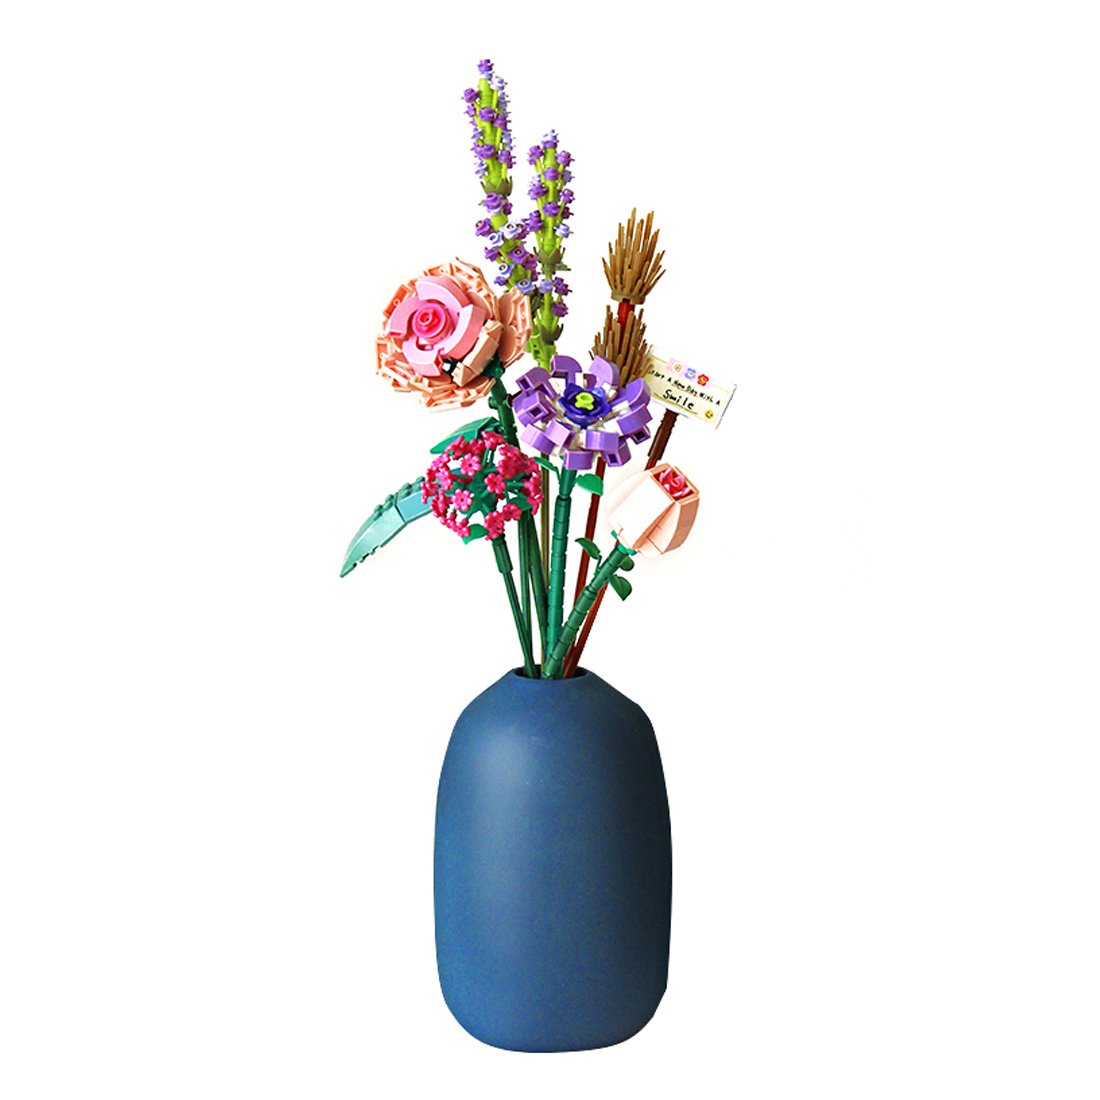 547Pcs Creative Flower Building Block Set without Vase - Romance Aegean Sea 